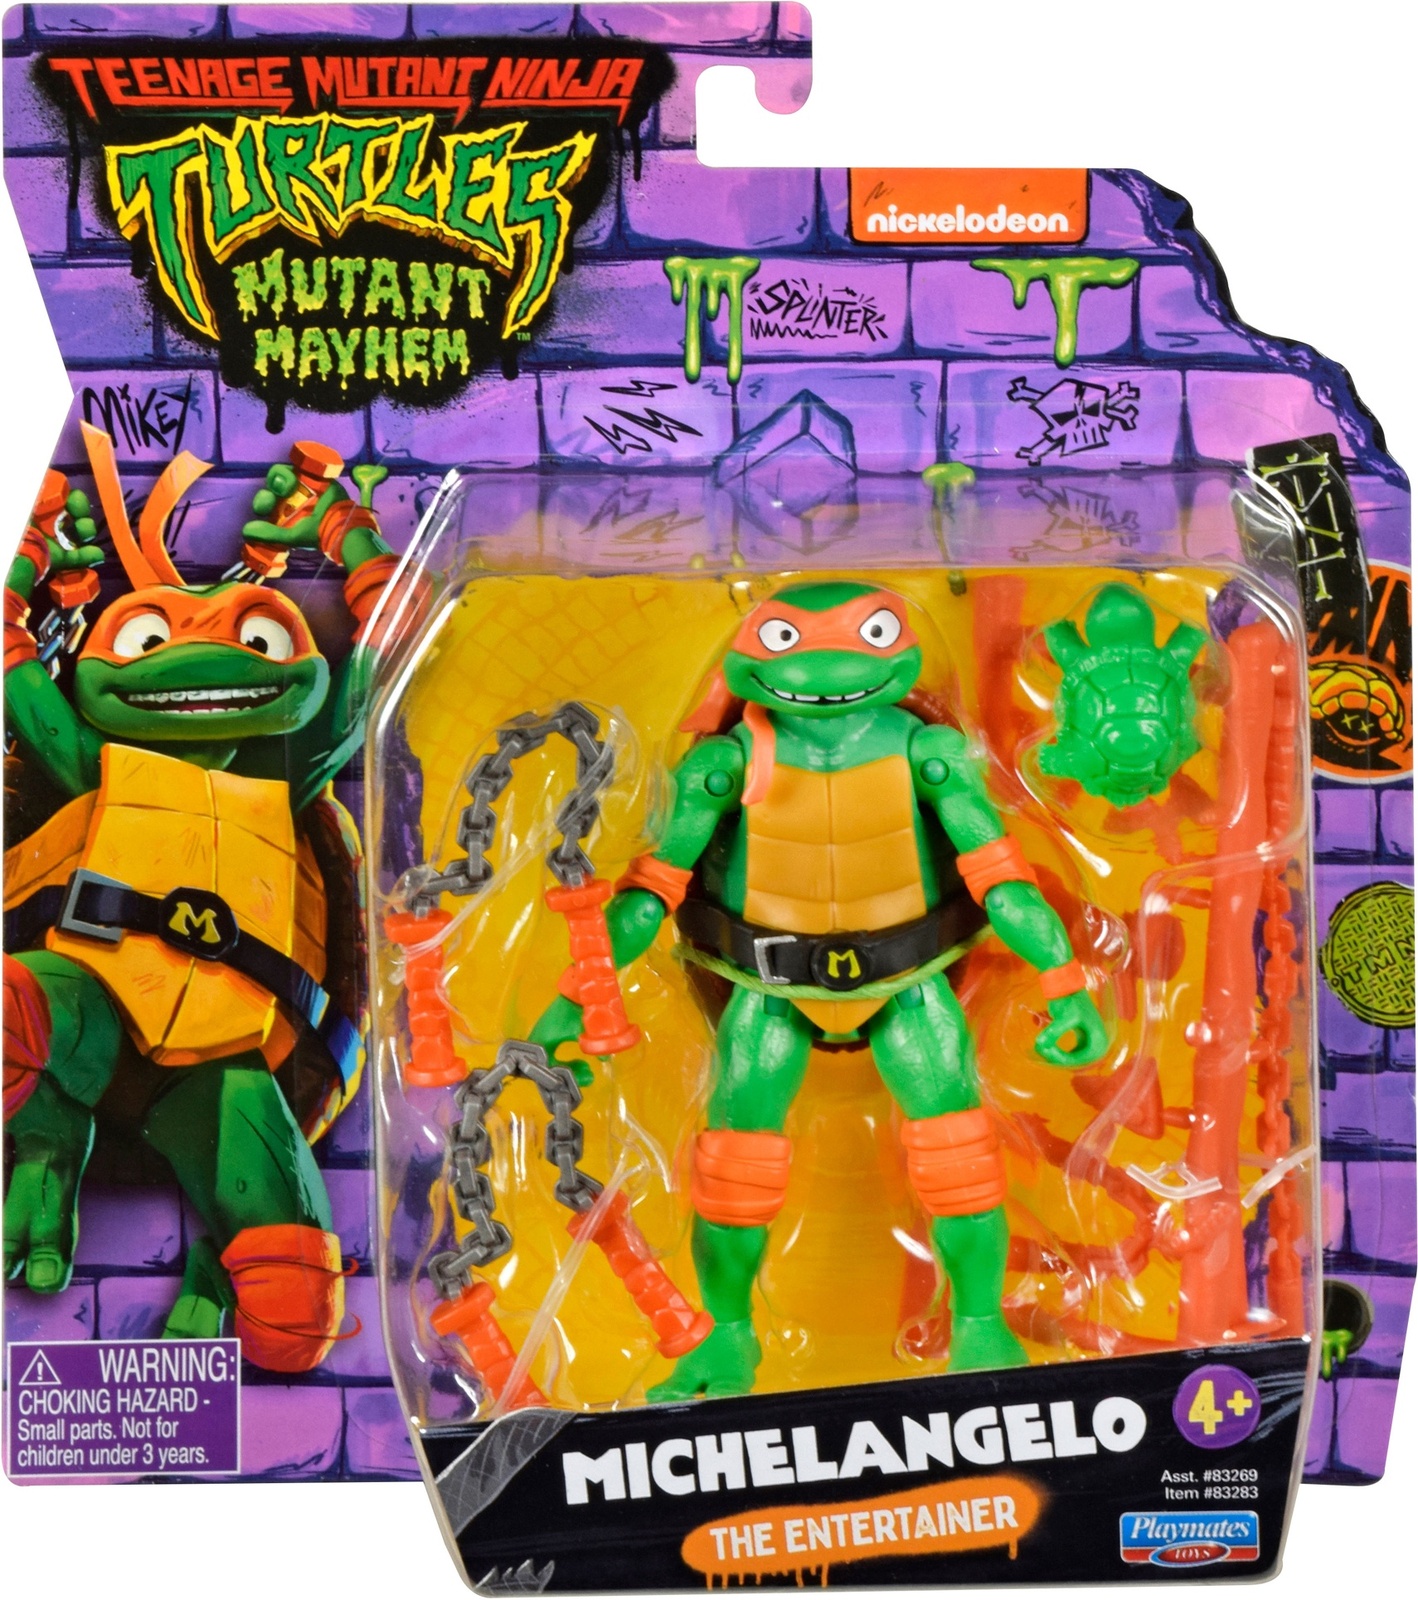 Playmates Teenage Mutant Ninja Turtles Mutant Mayhem 5.5 Ninja Shouts  Figure